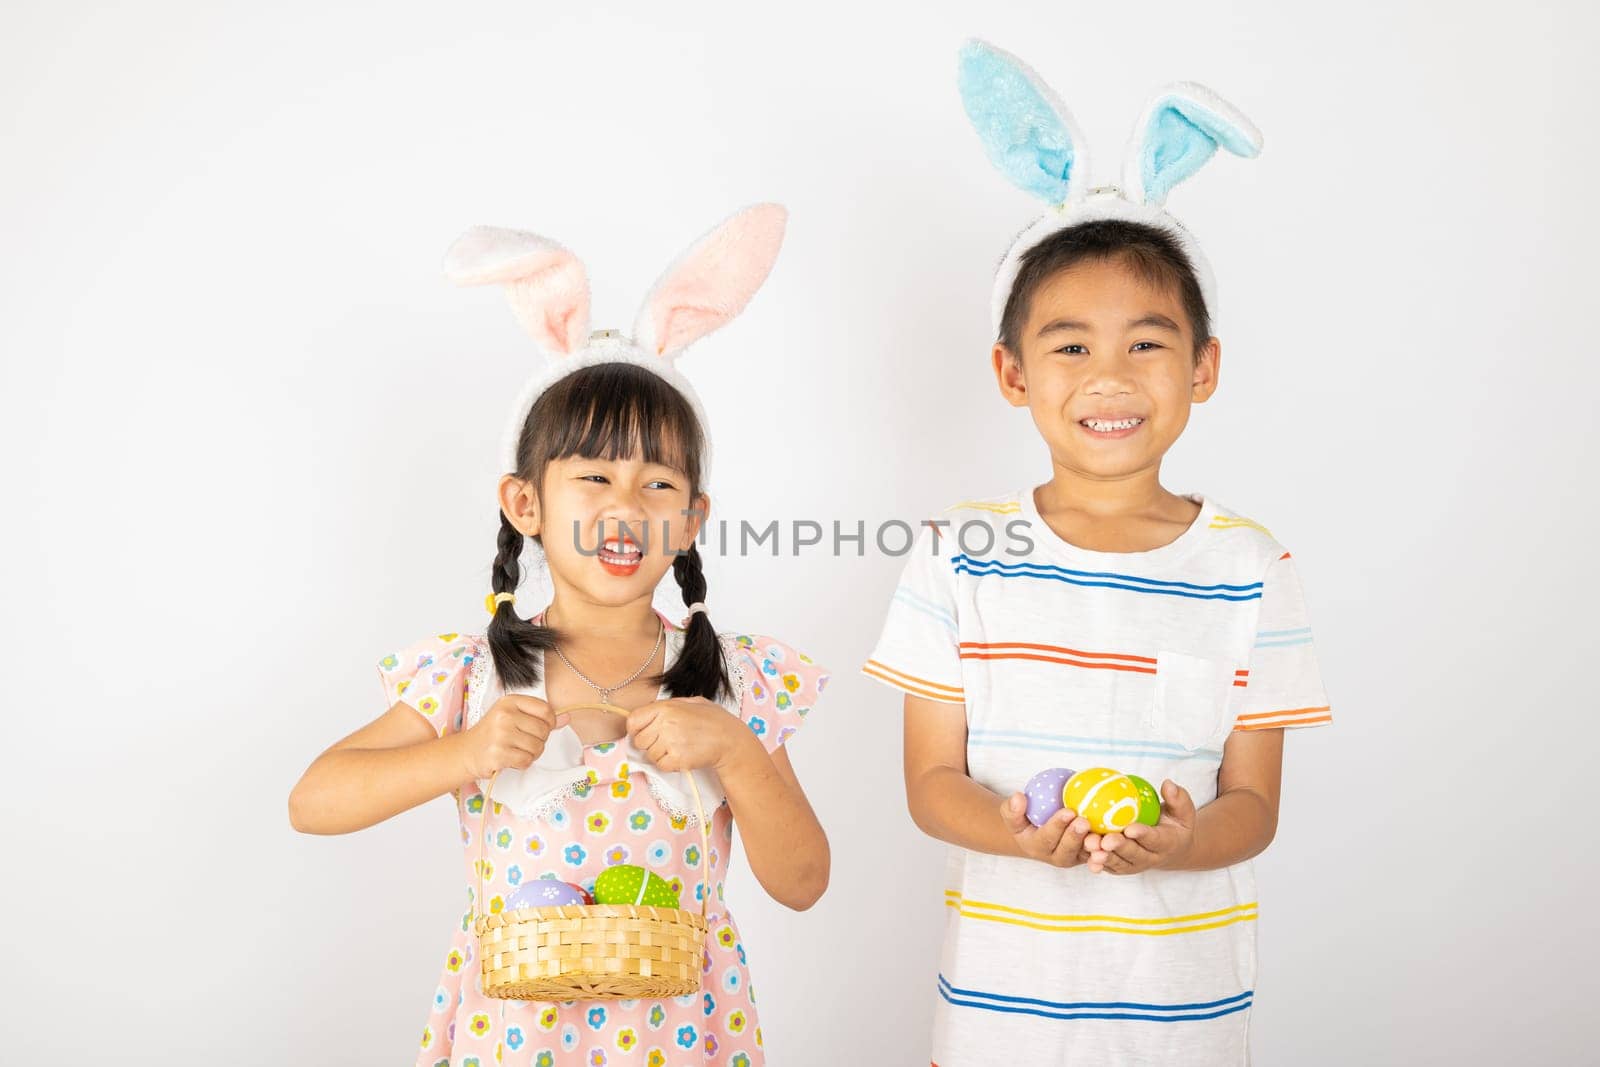 Happy Easter Day by Sorapop